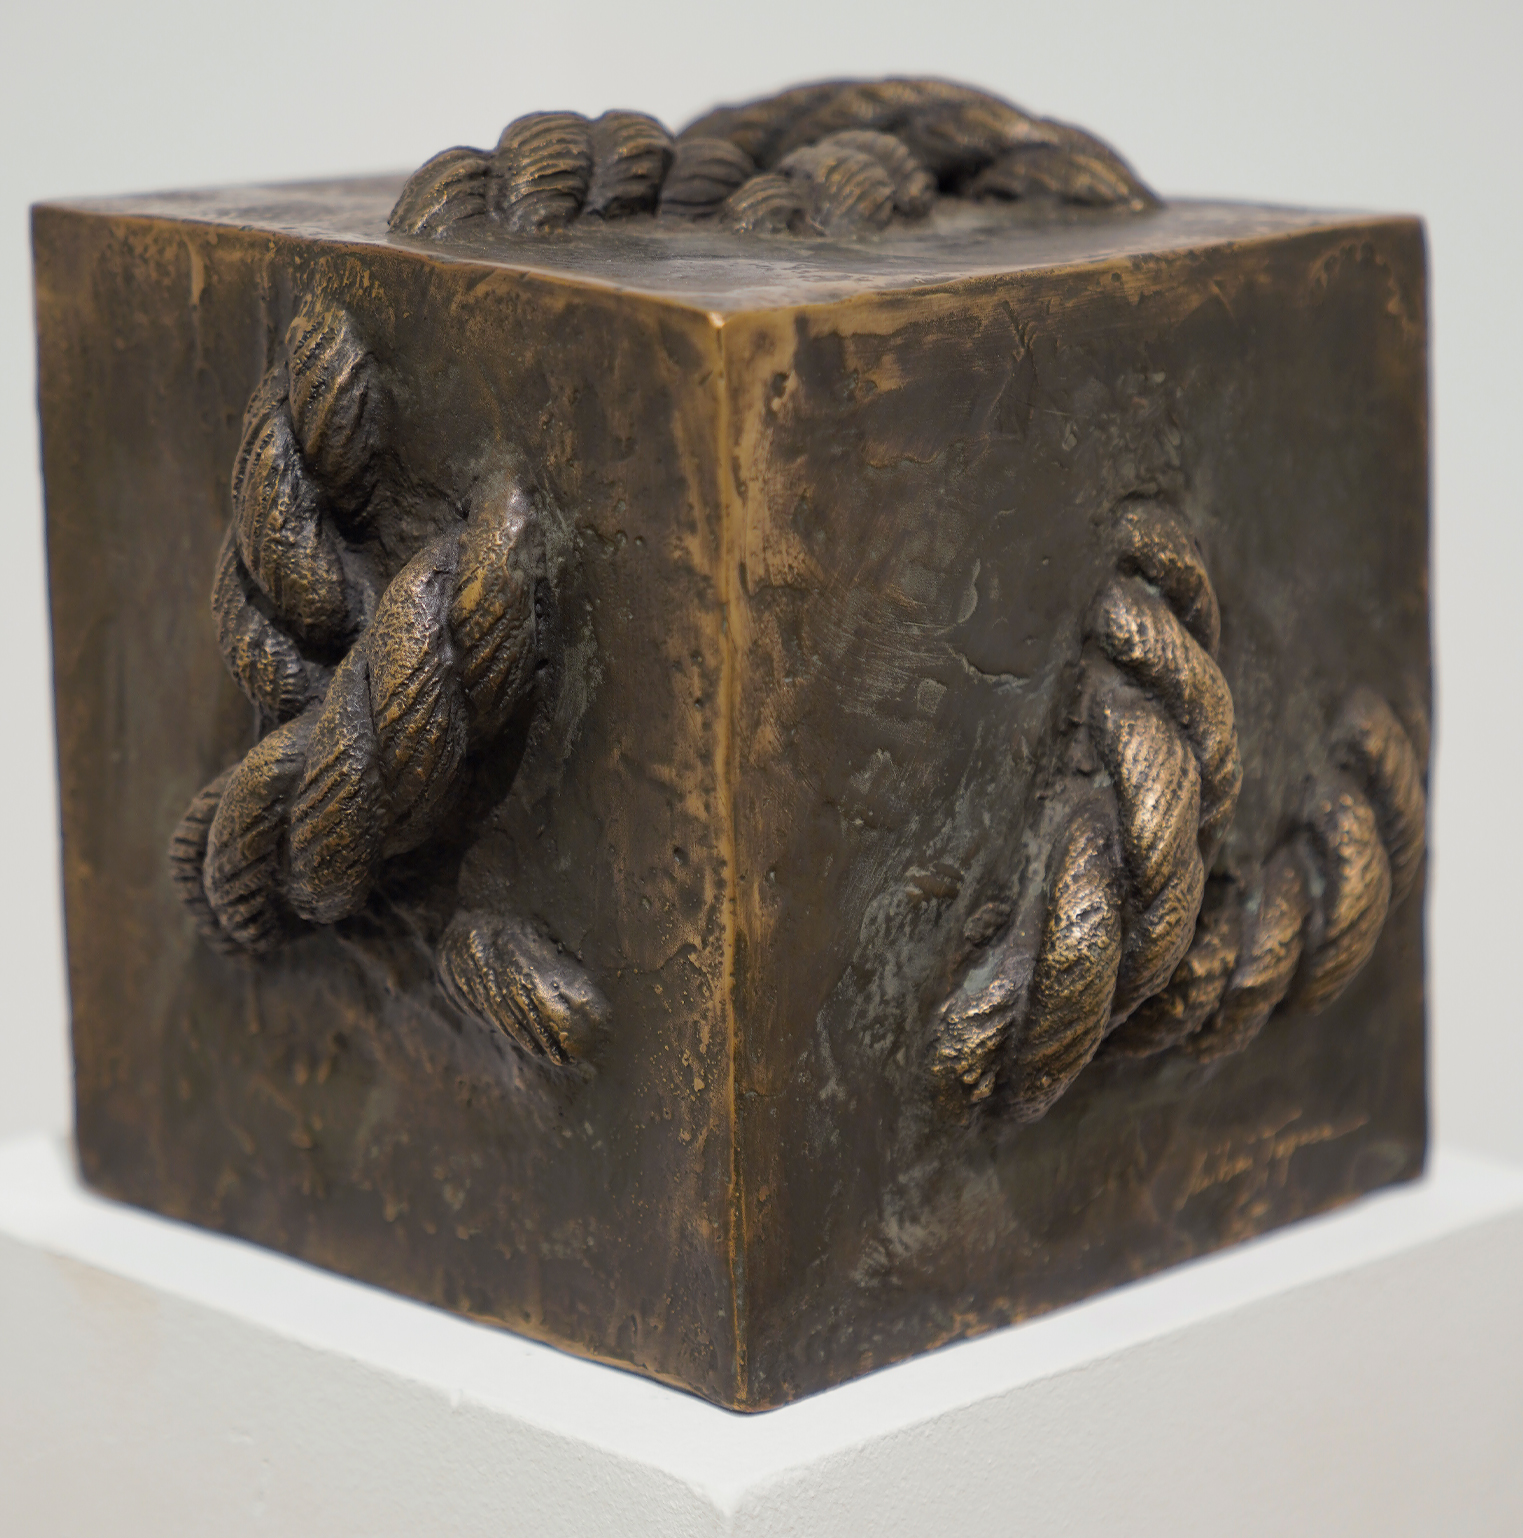 Mihai Țopescu Captive Energies, bronze, 24 x 27 x 26 cm